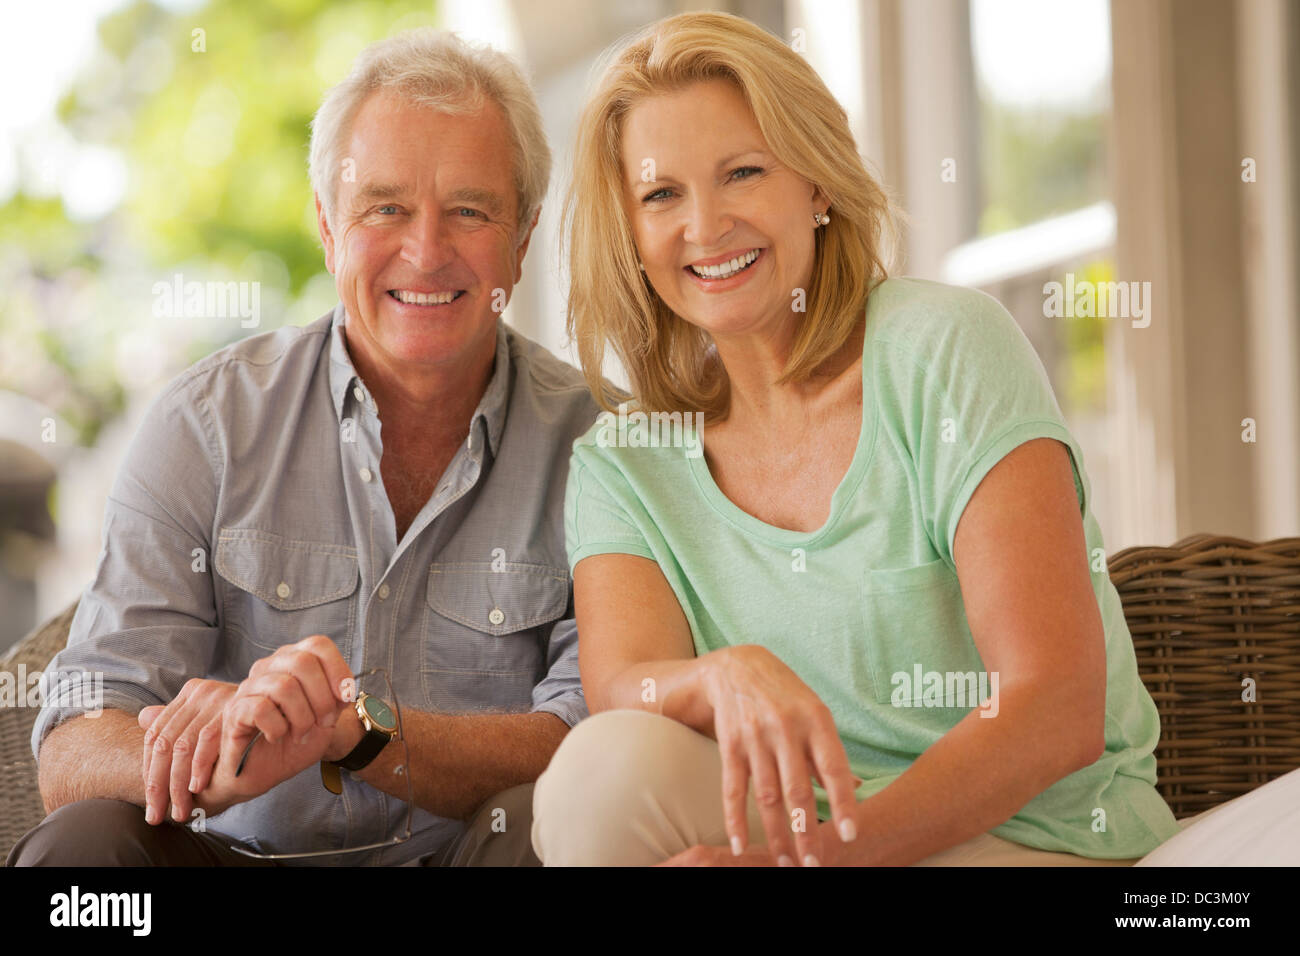 Portrait of smiling couple on patio Banque D'Images